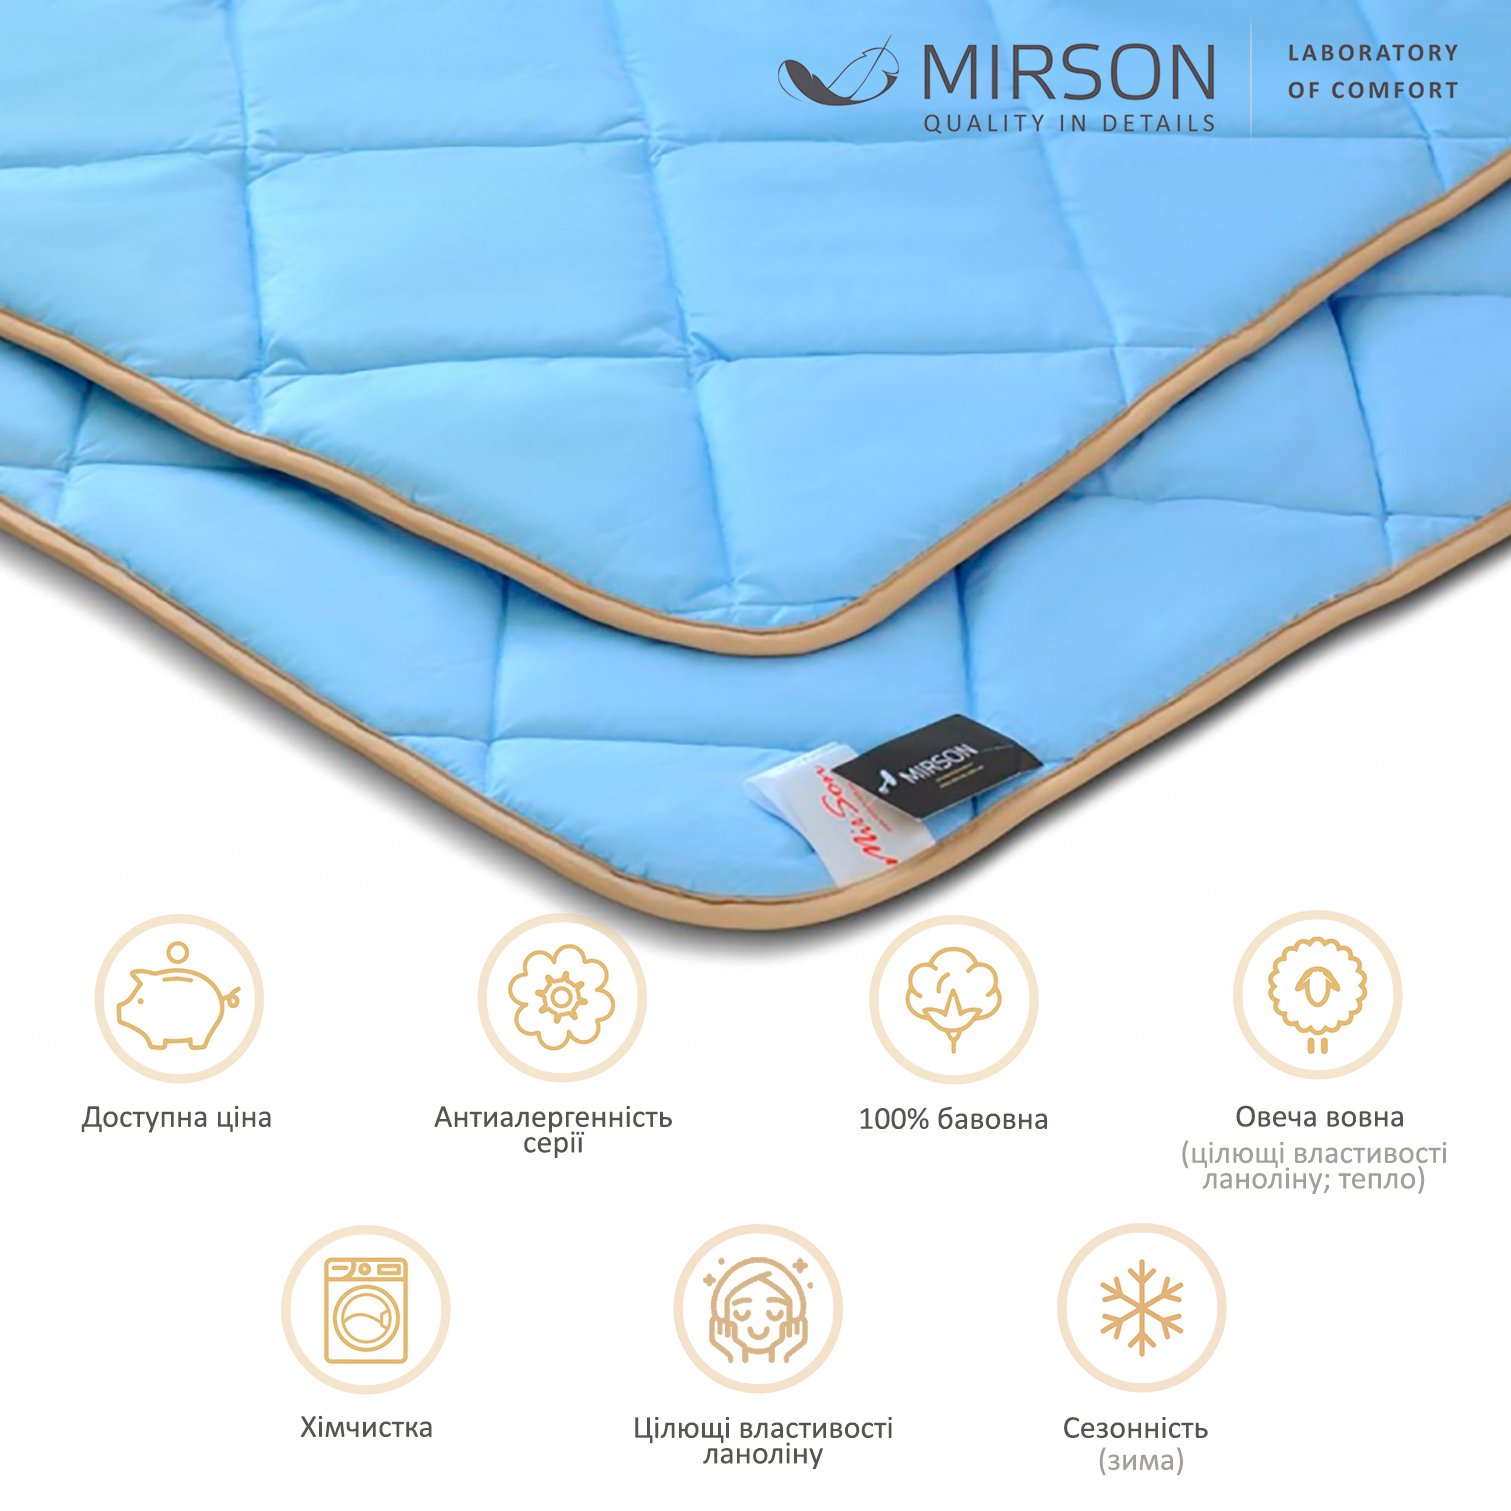 Одеяло шерстяное MirSon Valentino №0338, зимнее, 140x205 см, голубое - фото 5